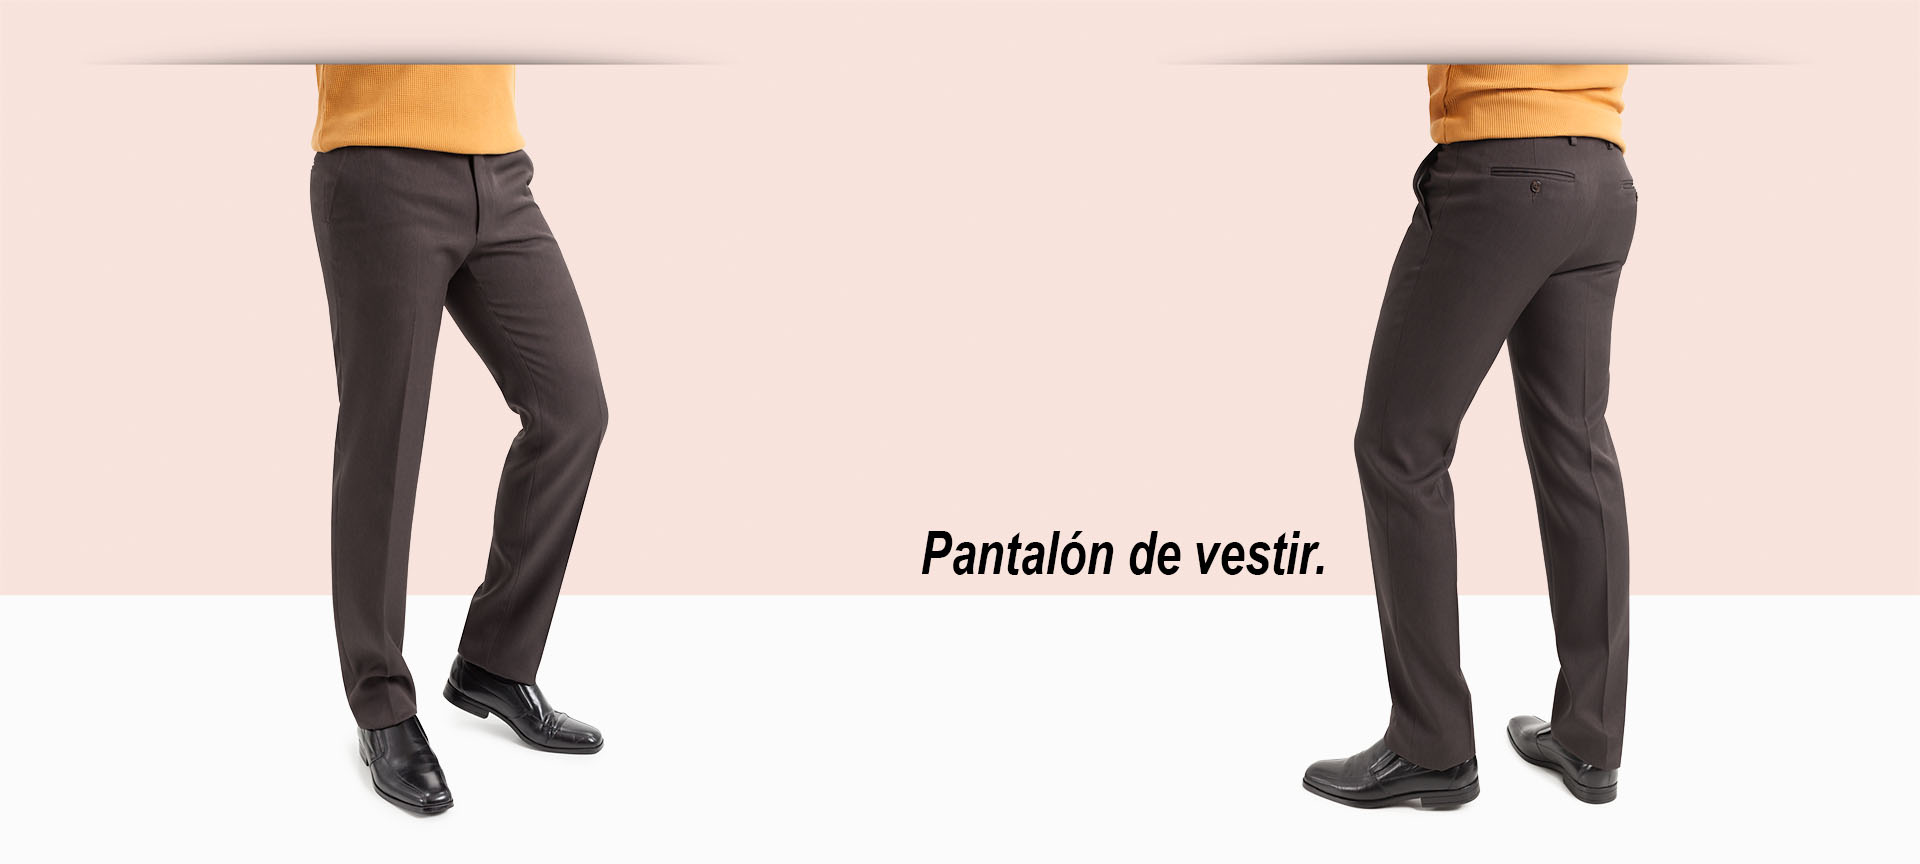 Comprar Pantalones TCH para hombre Elegantes de Vestir, pantalon de Hombre, pantalones para Caballero, pantalón joven cómodos y pantalones de hombre TCH elásticos fabricados en España. 